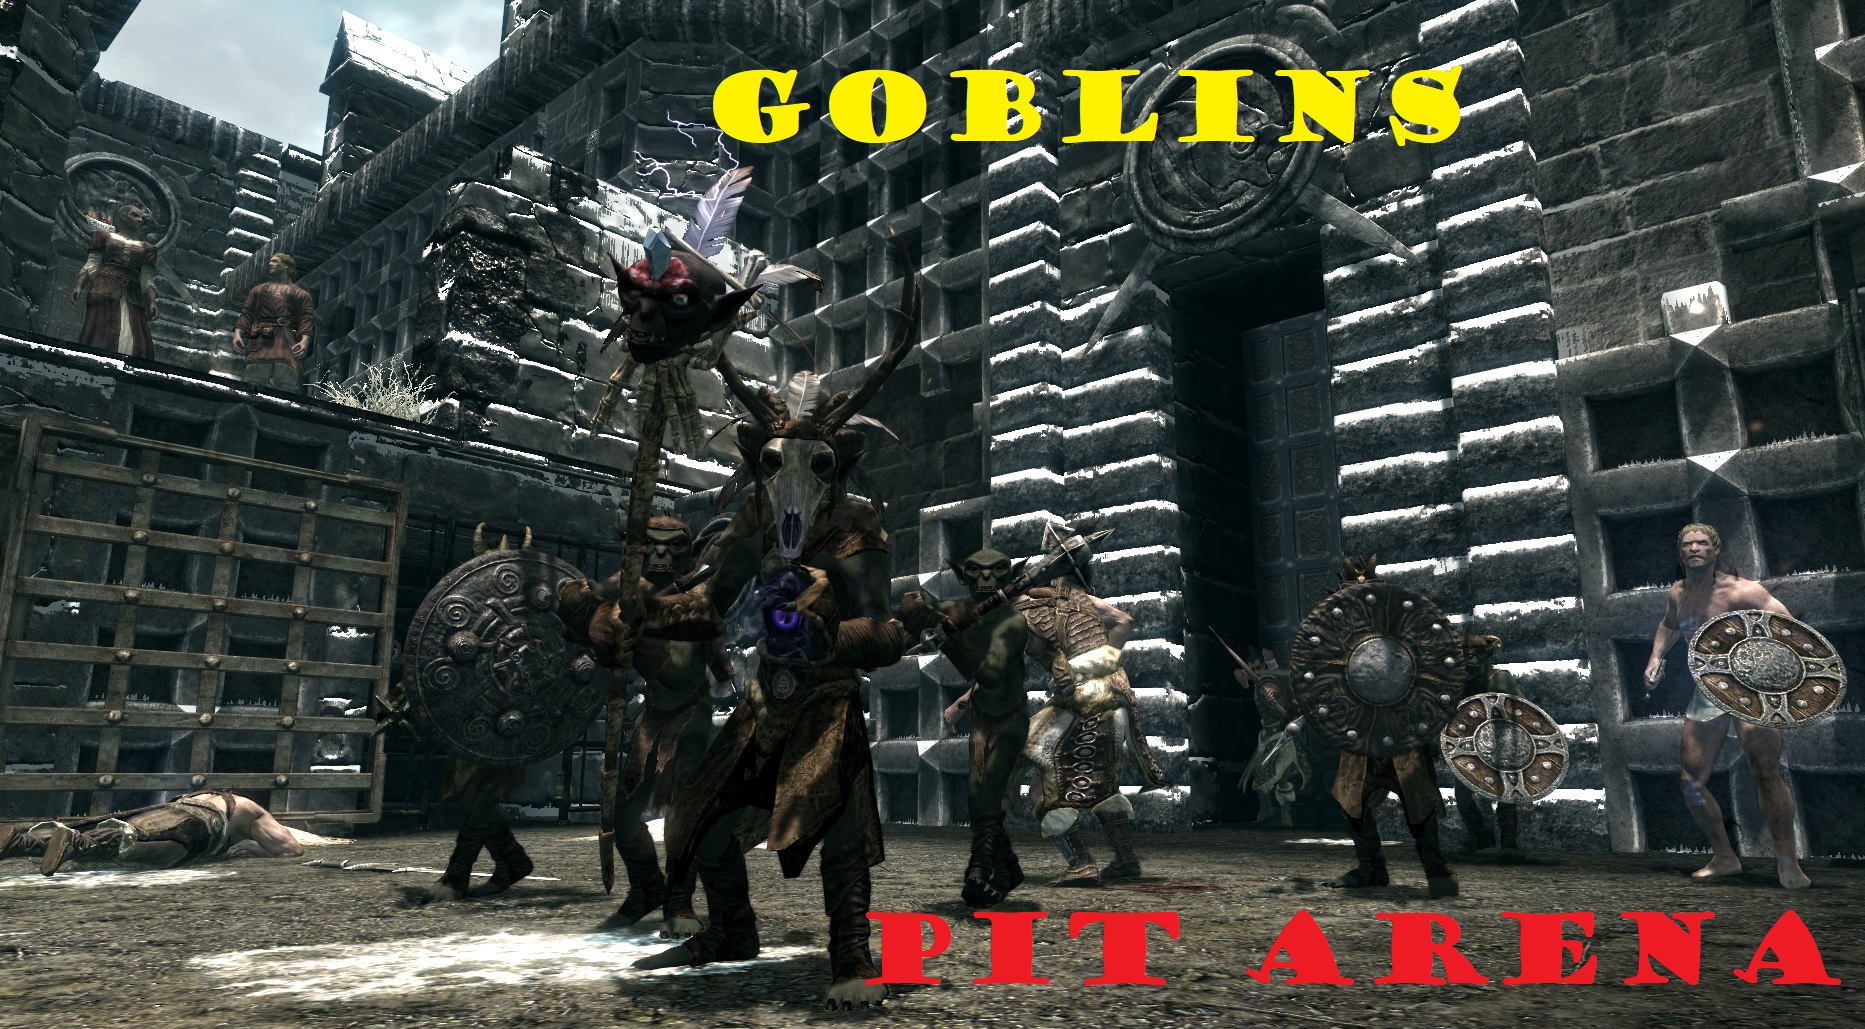 Pit Arena Goblins